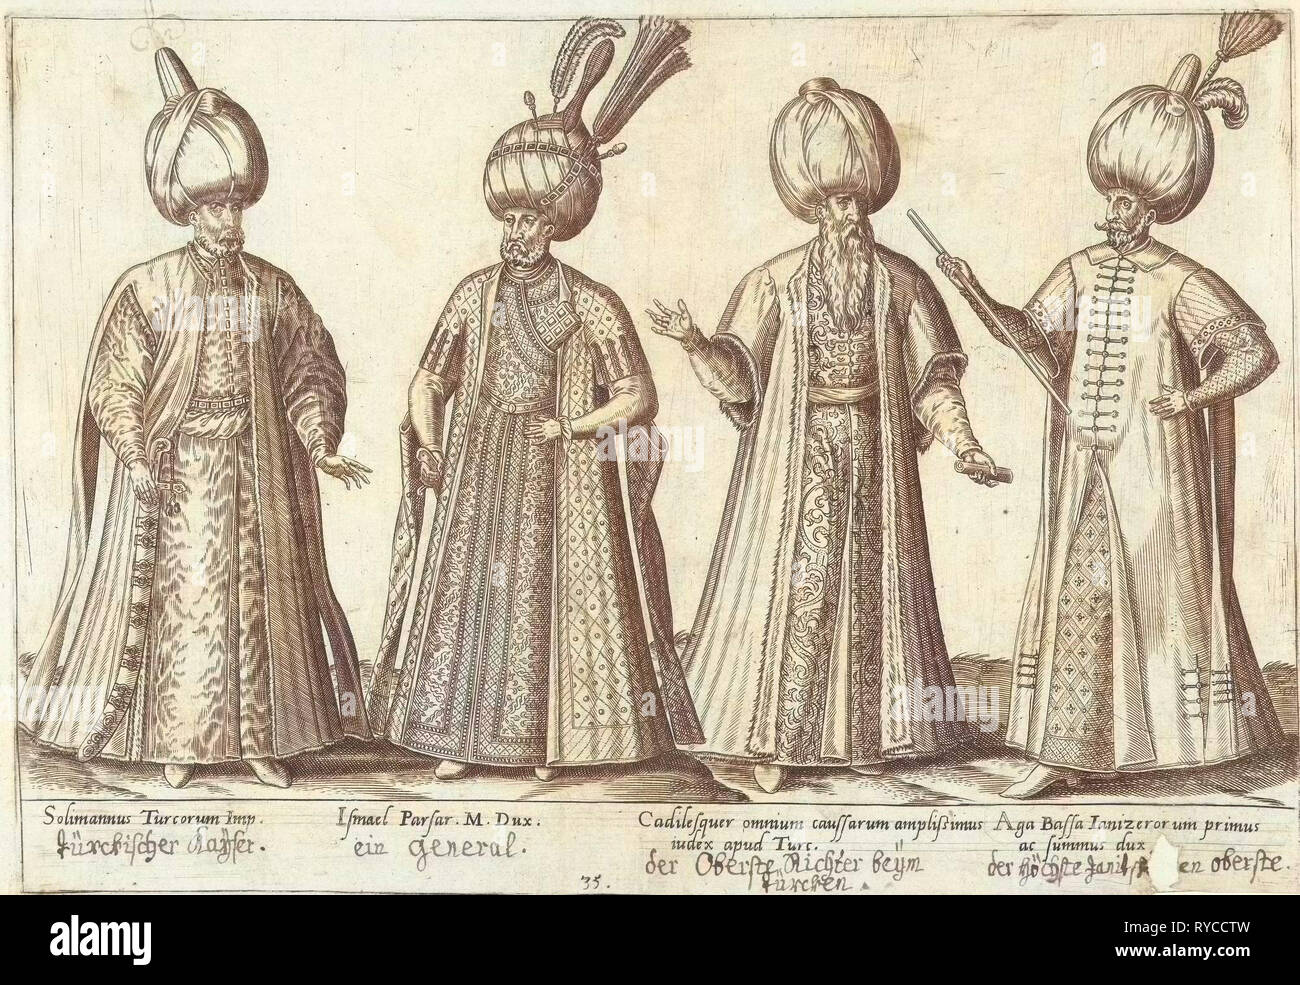 Robe de dignitaires ottomans autour de 1580, Abraham de Bruyn, Joos de Bosscher, 1581 Banque D'Images